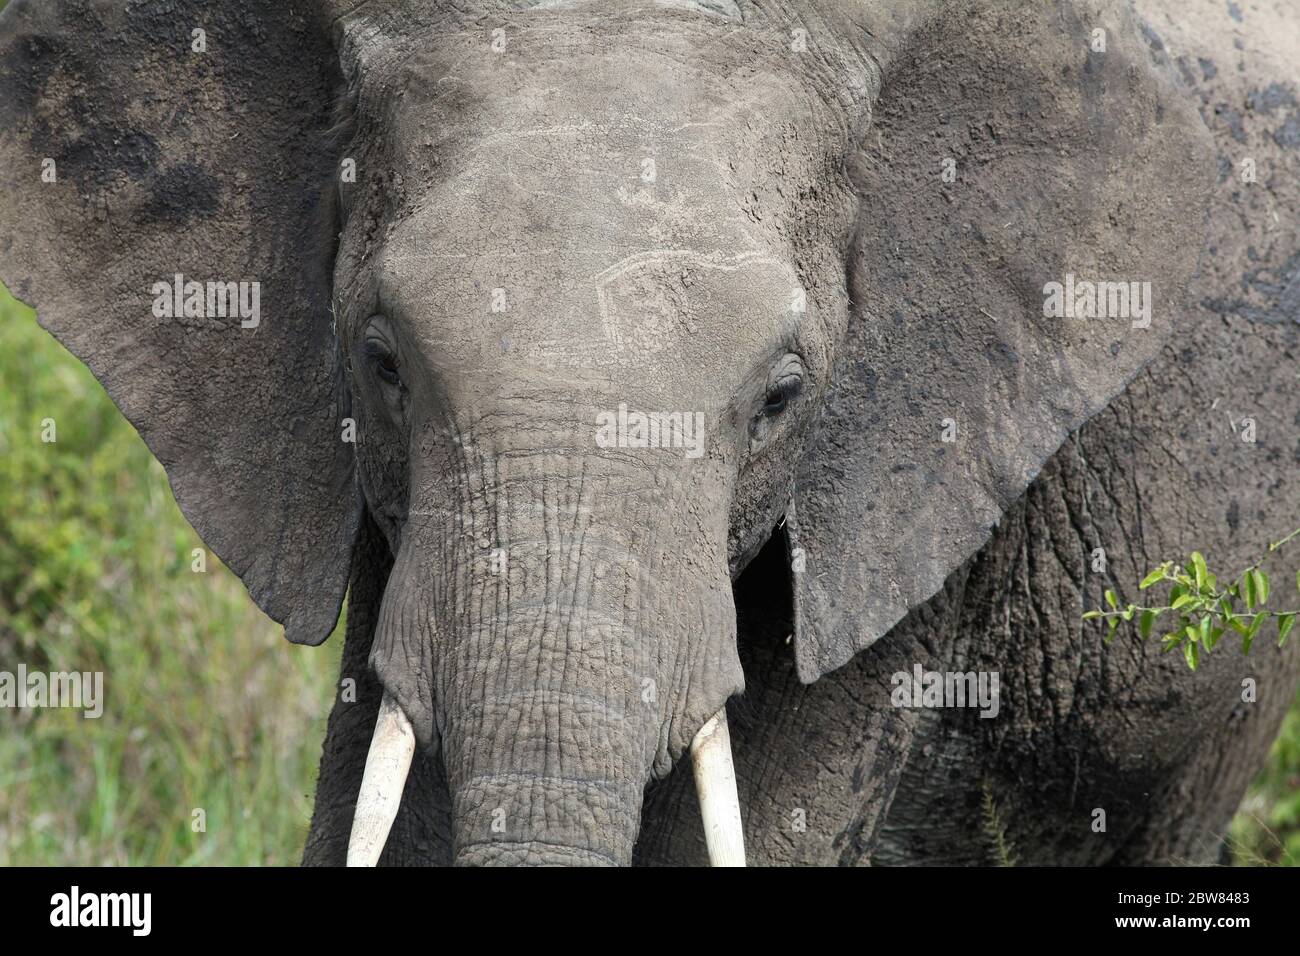 Portrait d'un jeune éléphant avec des défenses courtes et des oreilles surélevées, vue frontale de la tête, gros plan Banque D'Images